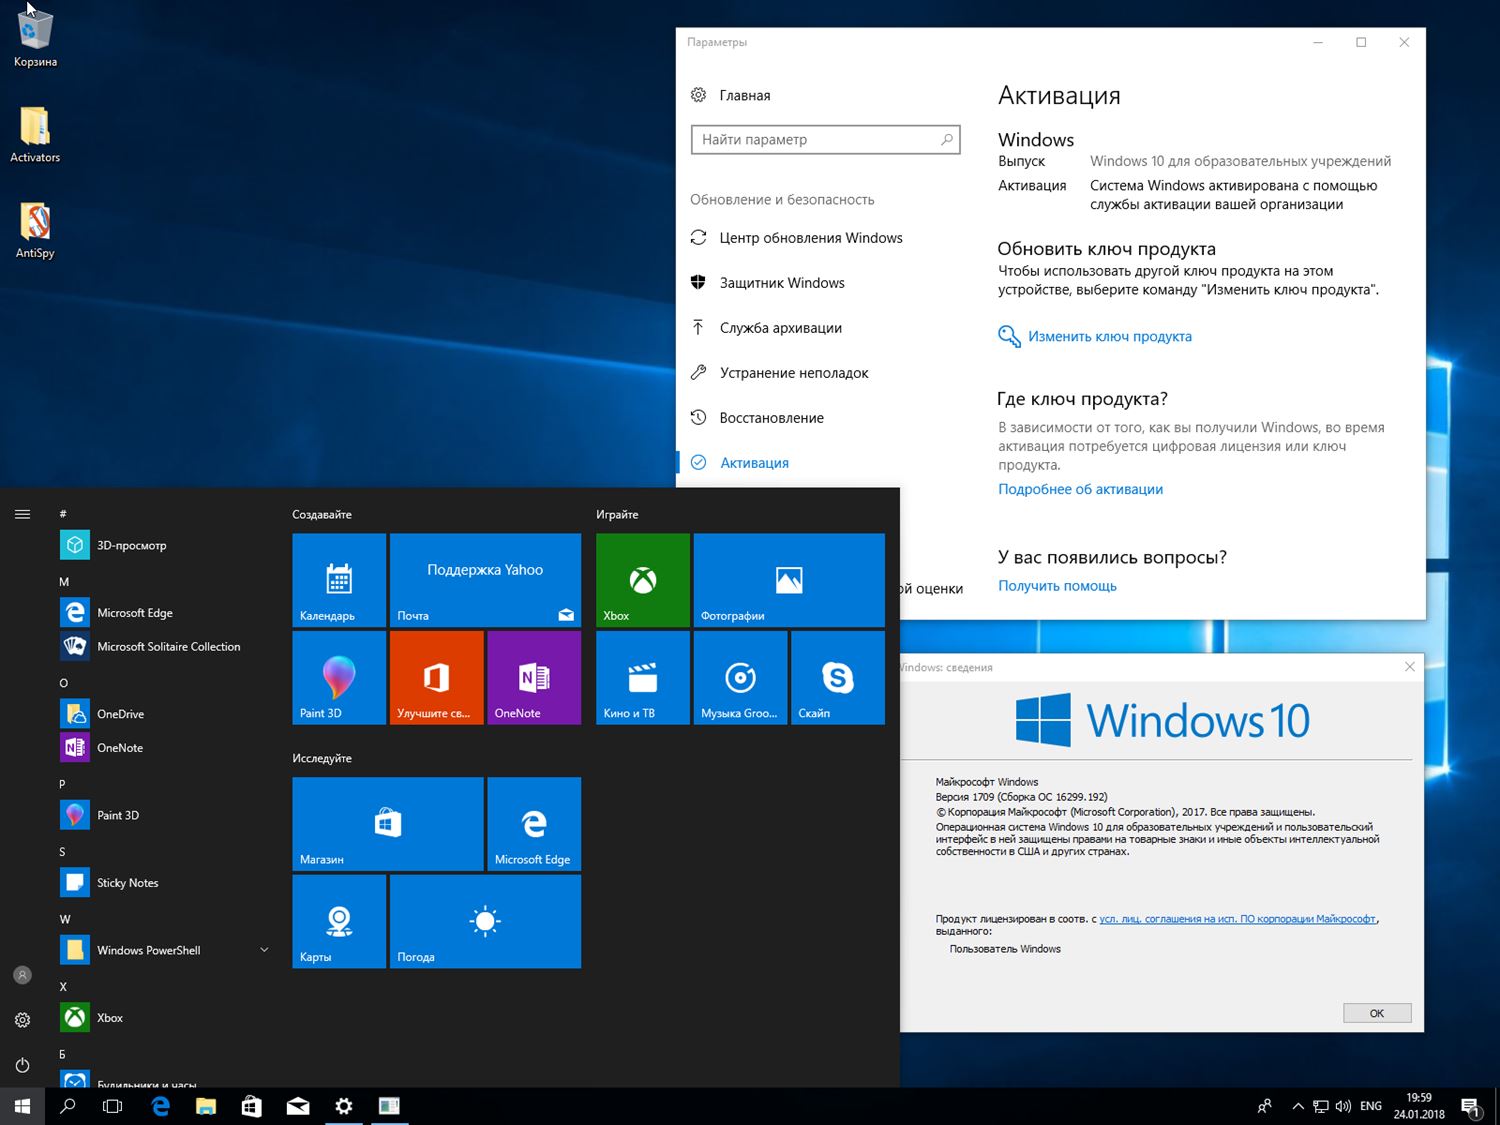 Виндовс 10 информация. Windows 1709. Виндовс 10 1709. Сборки виндовс 10. Цифровая лицензия Windows 10.